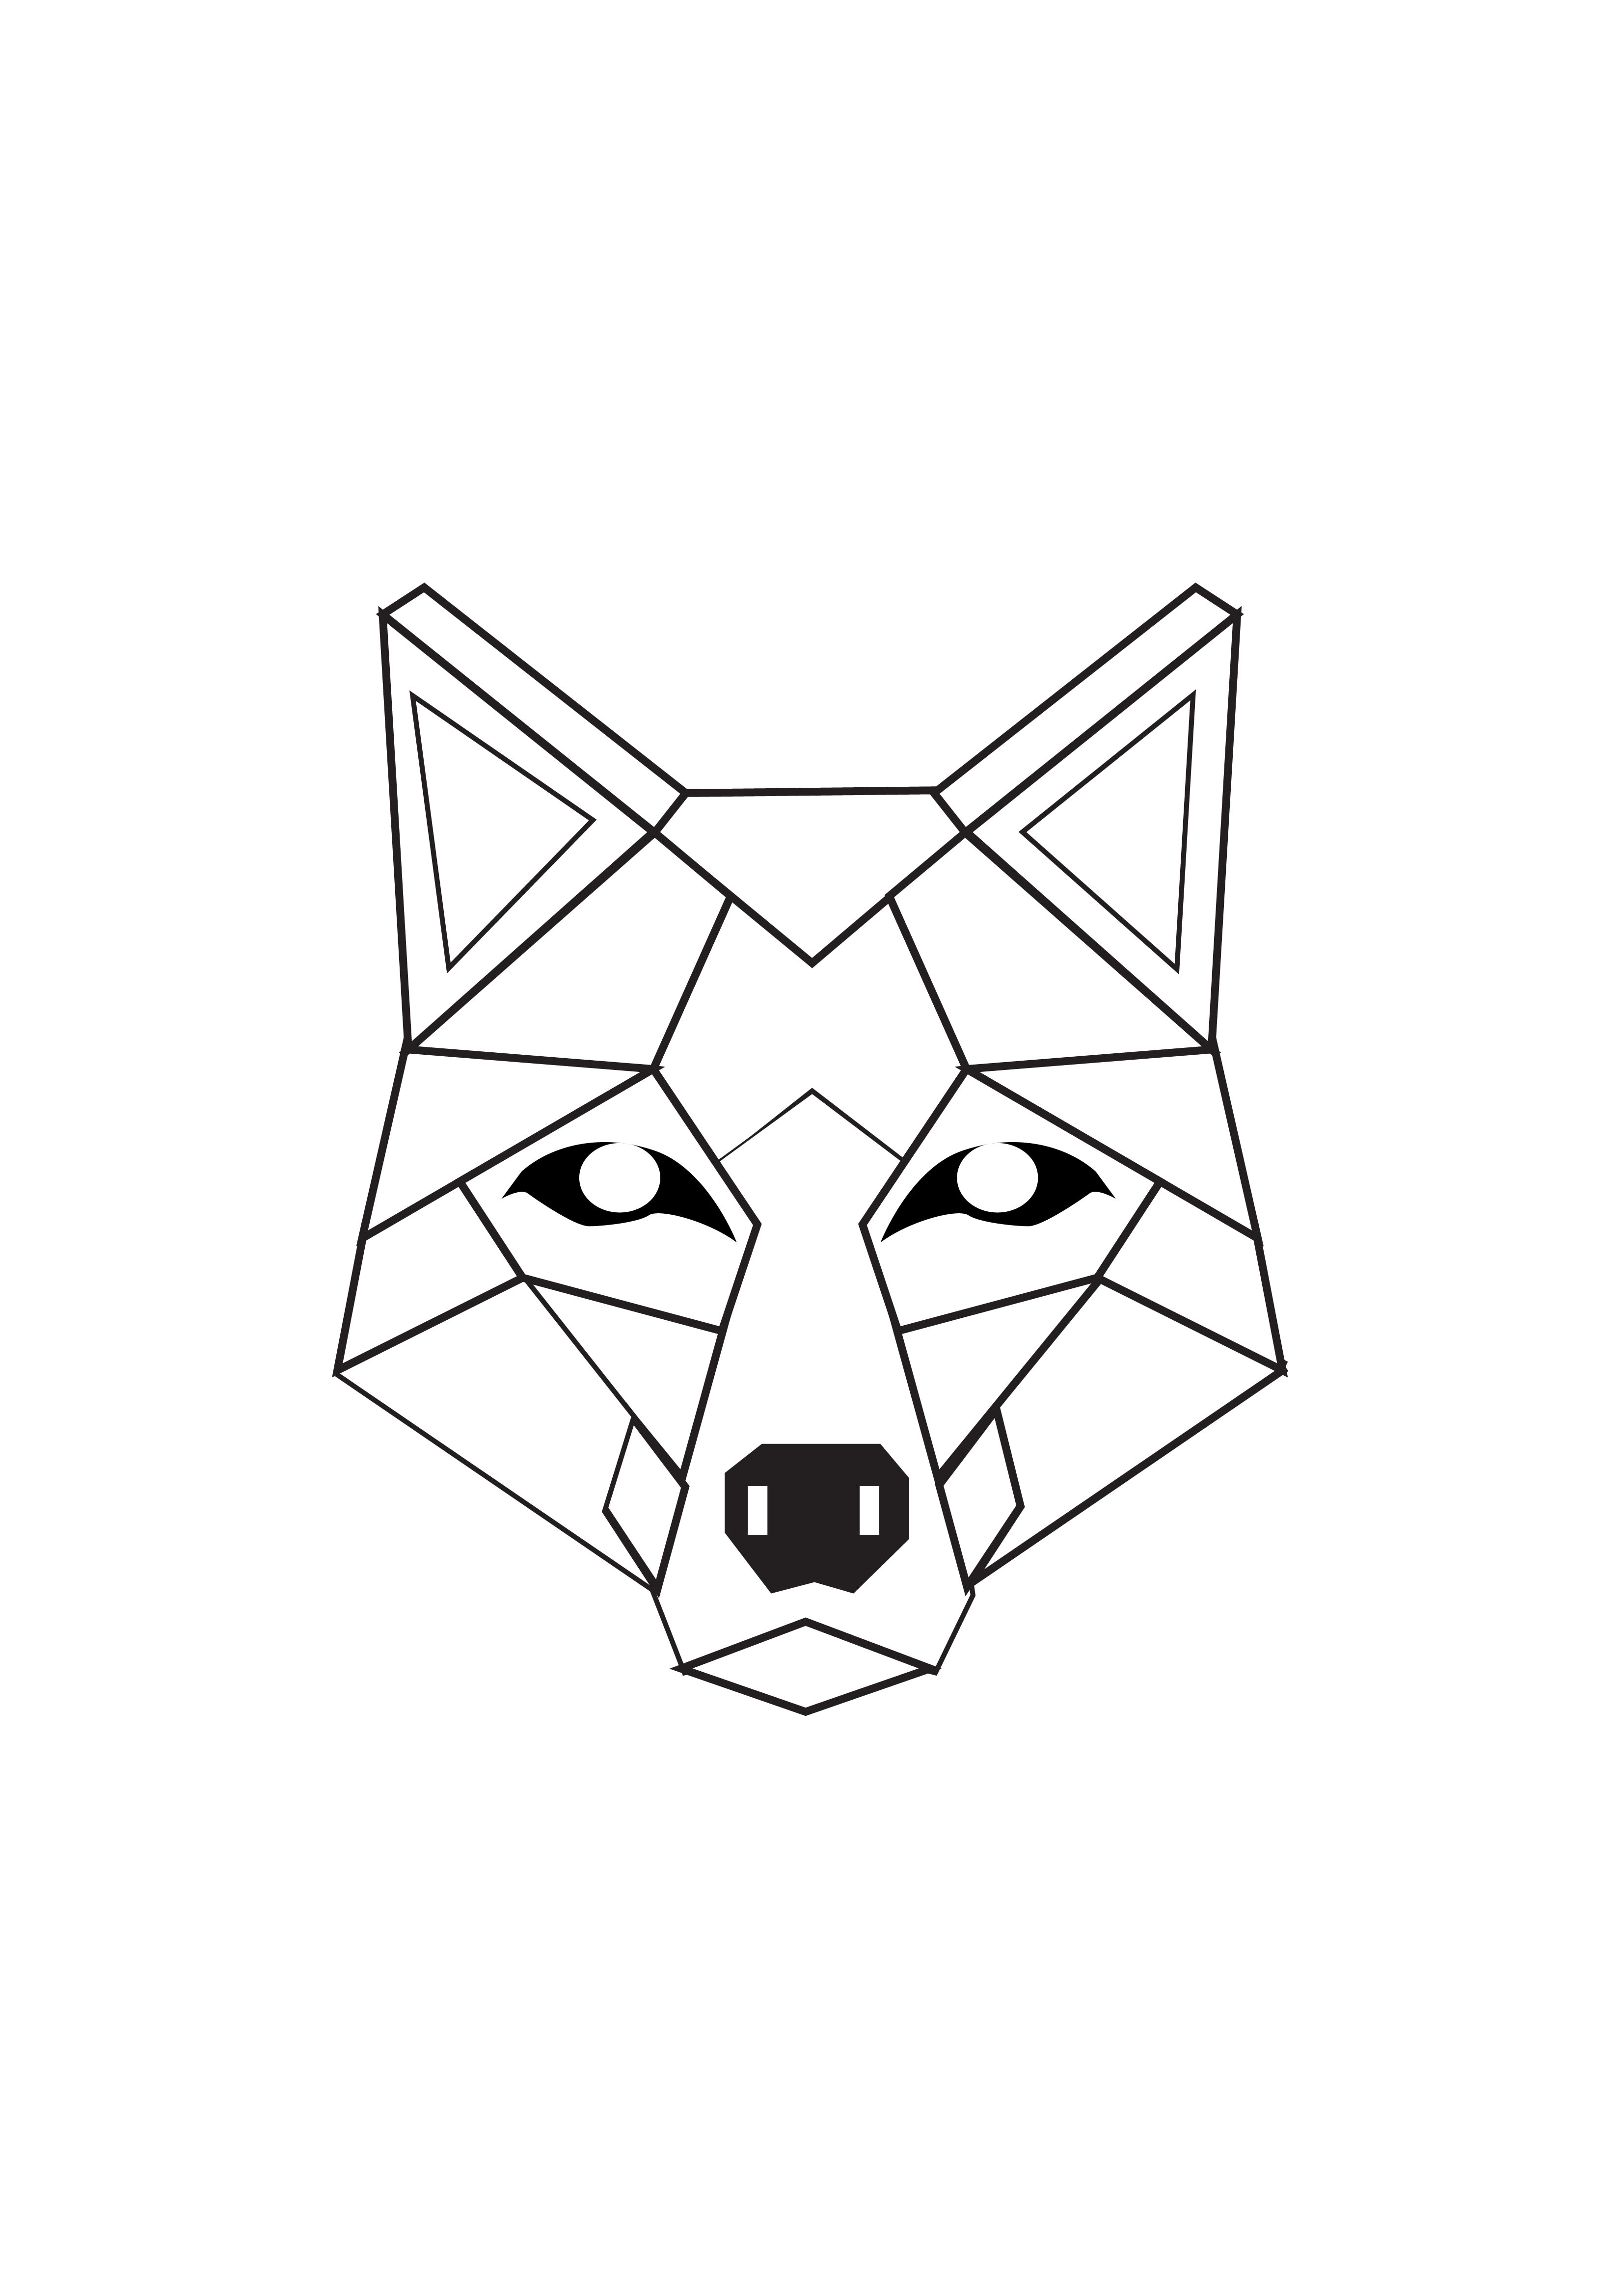 Draw geometric animal low poly art mascot tattoo art by Manju97731 | Fiverr